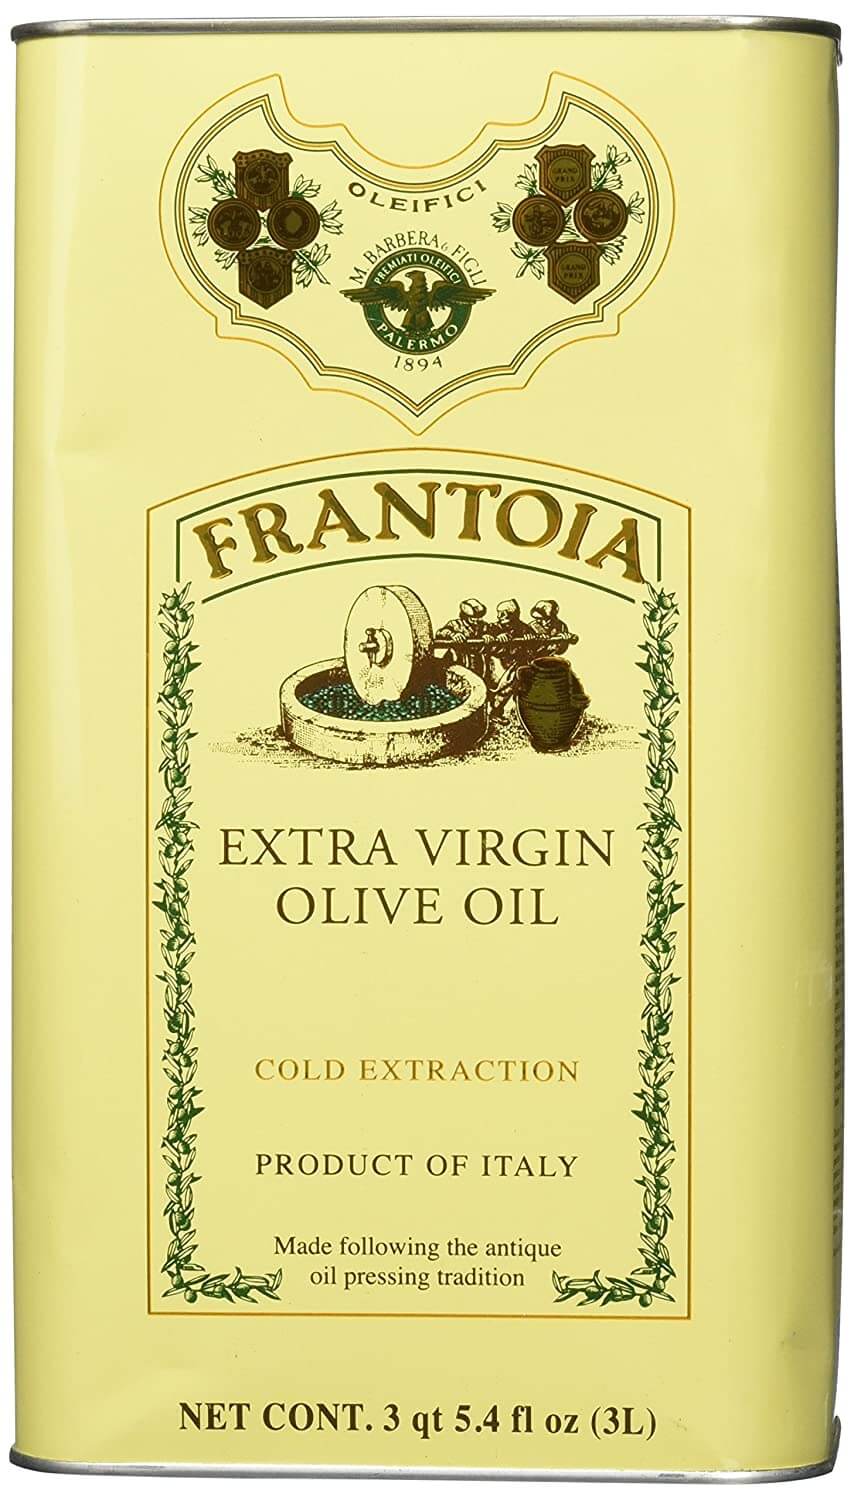 Frantoia Barbera Italian Olive Oil